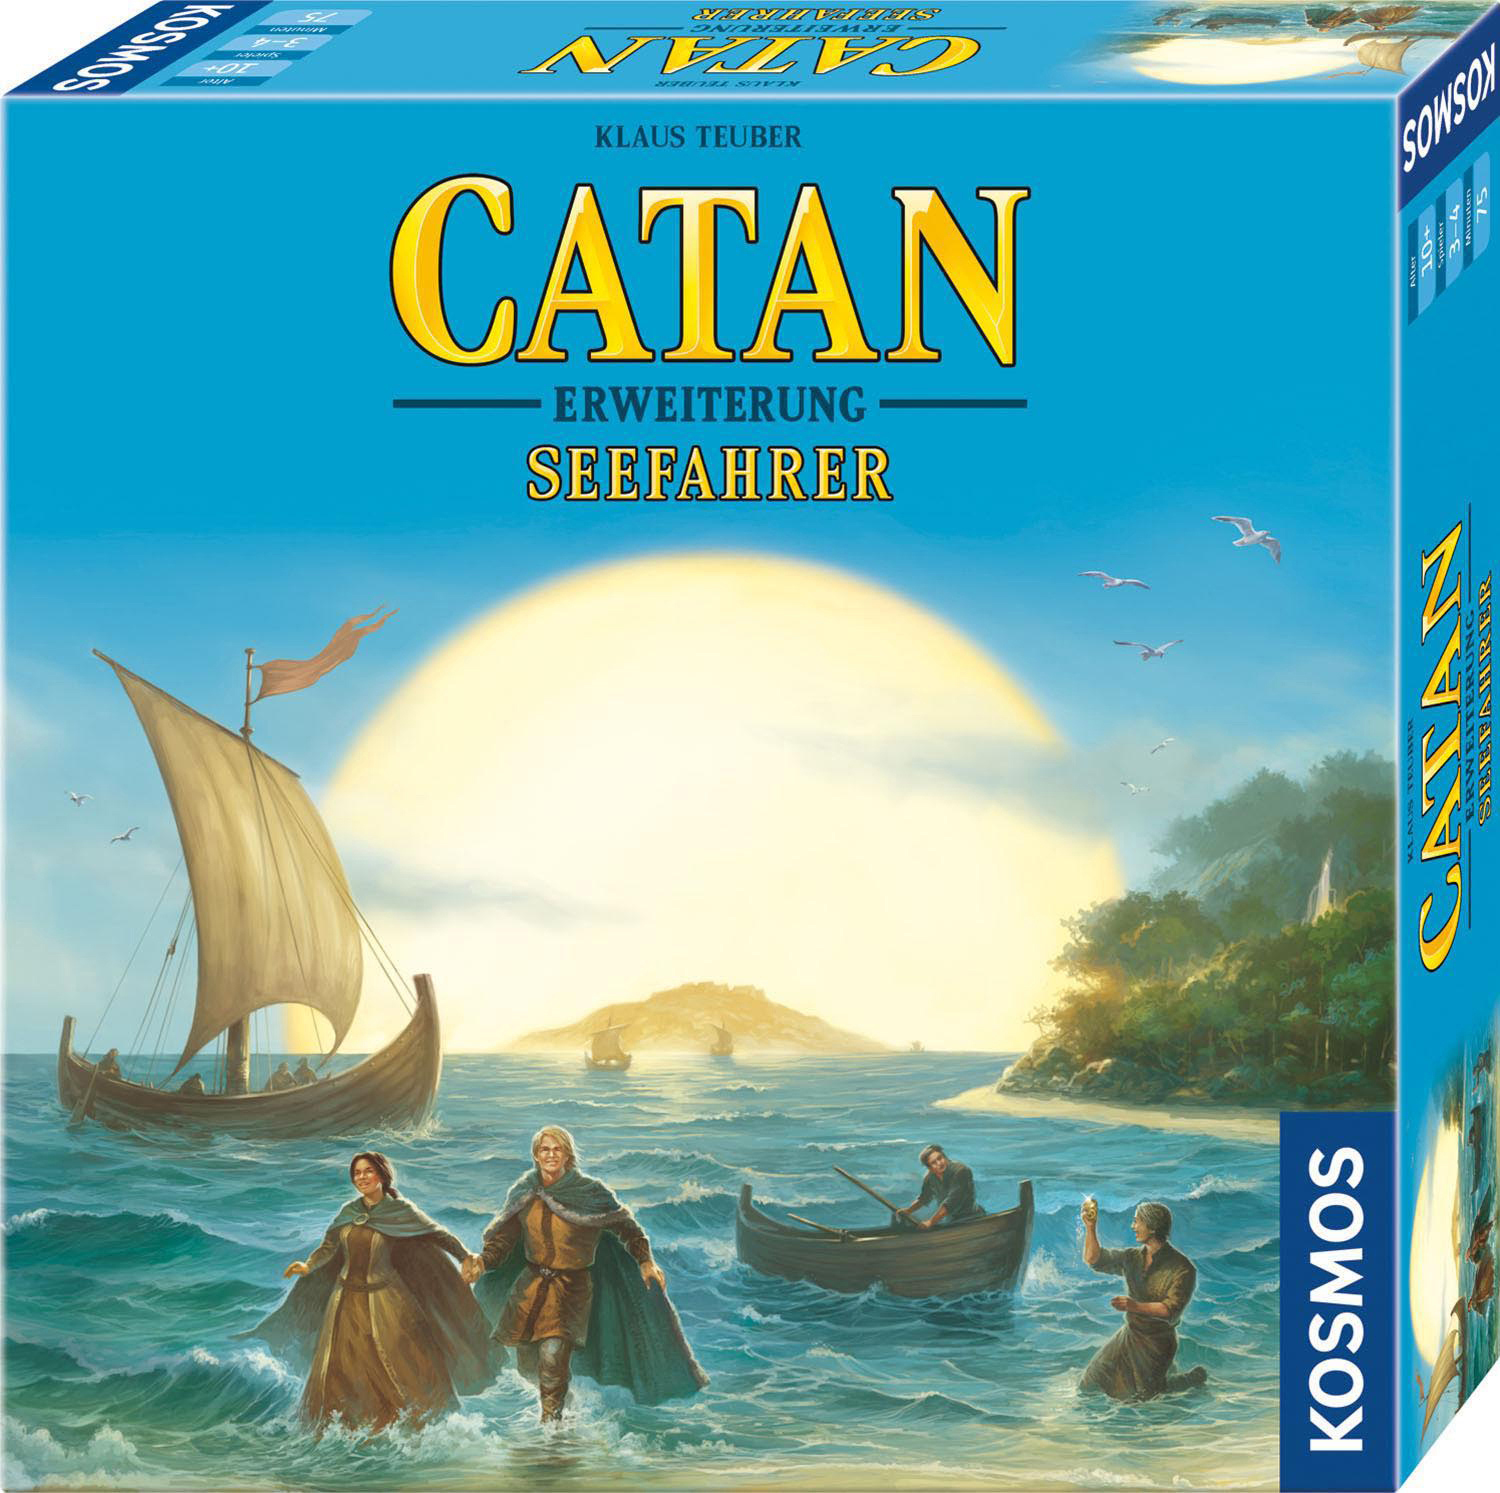 4 2022 Catan Seefahrer - Brettspiel Mehrfarbig KOSMOS Spieler 3 -